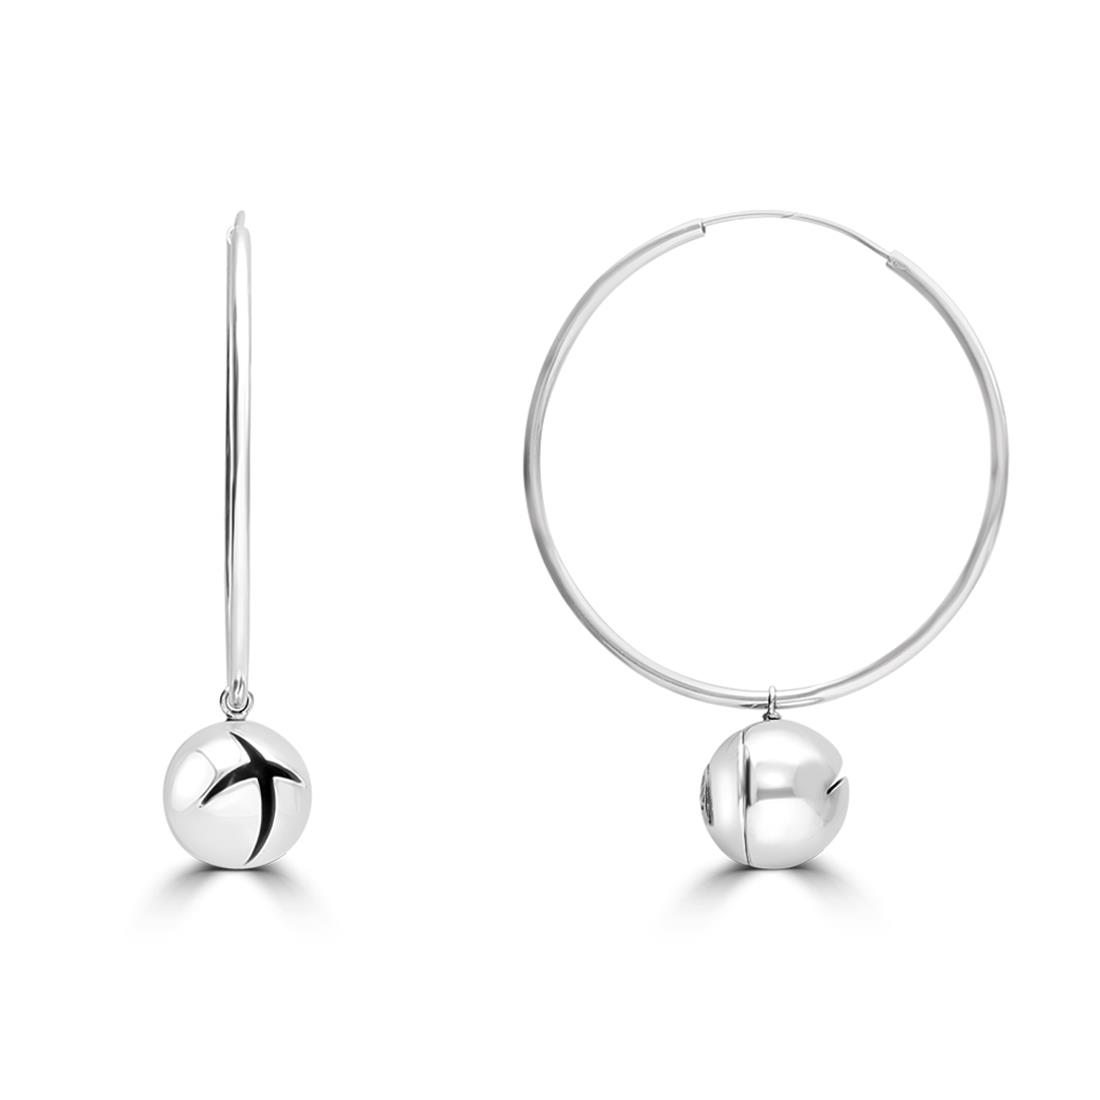 Sterling silver earrings, circle shaped - ALFIERI & ST. JOHN 925